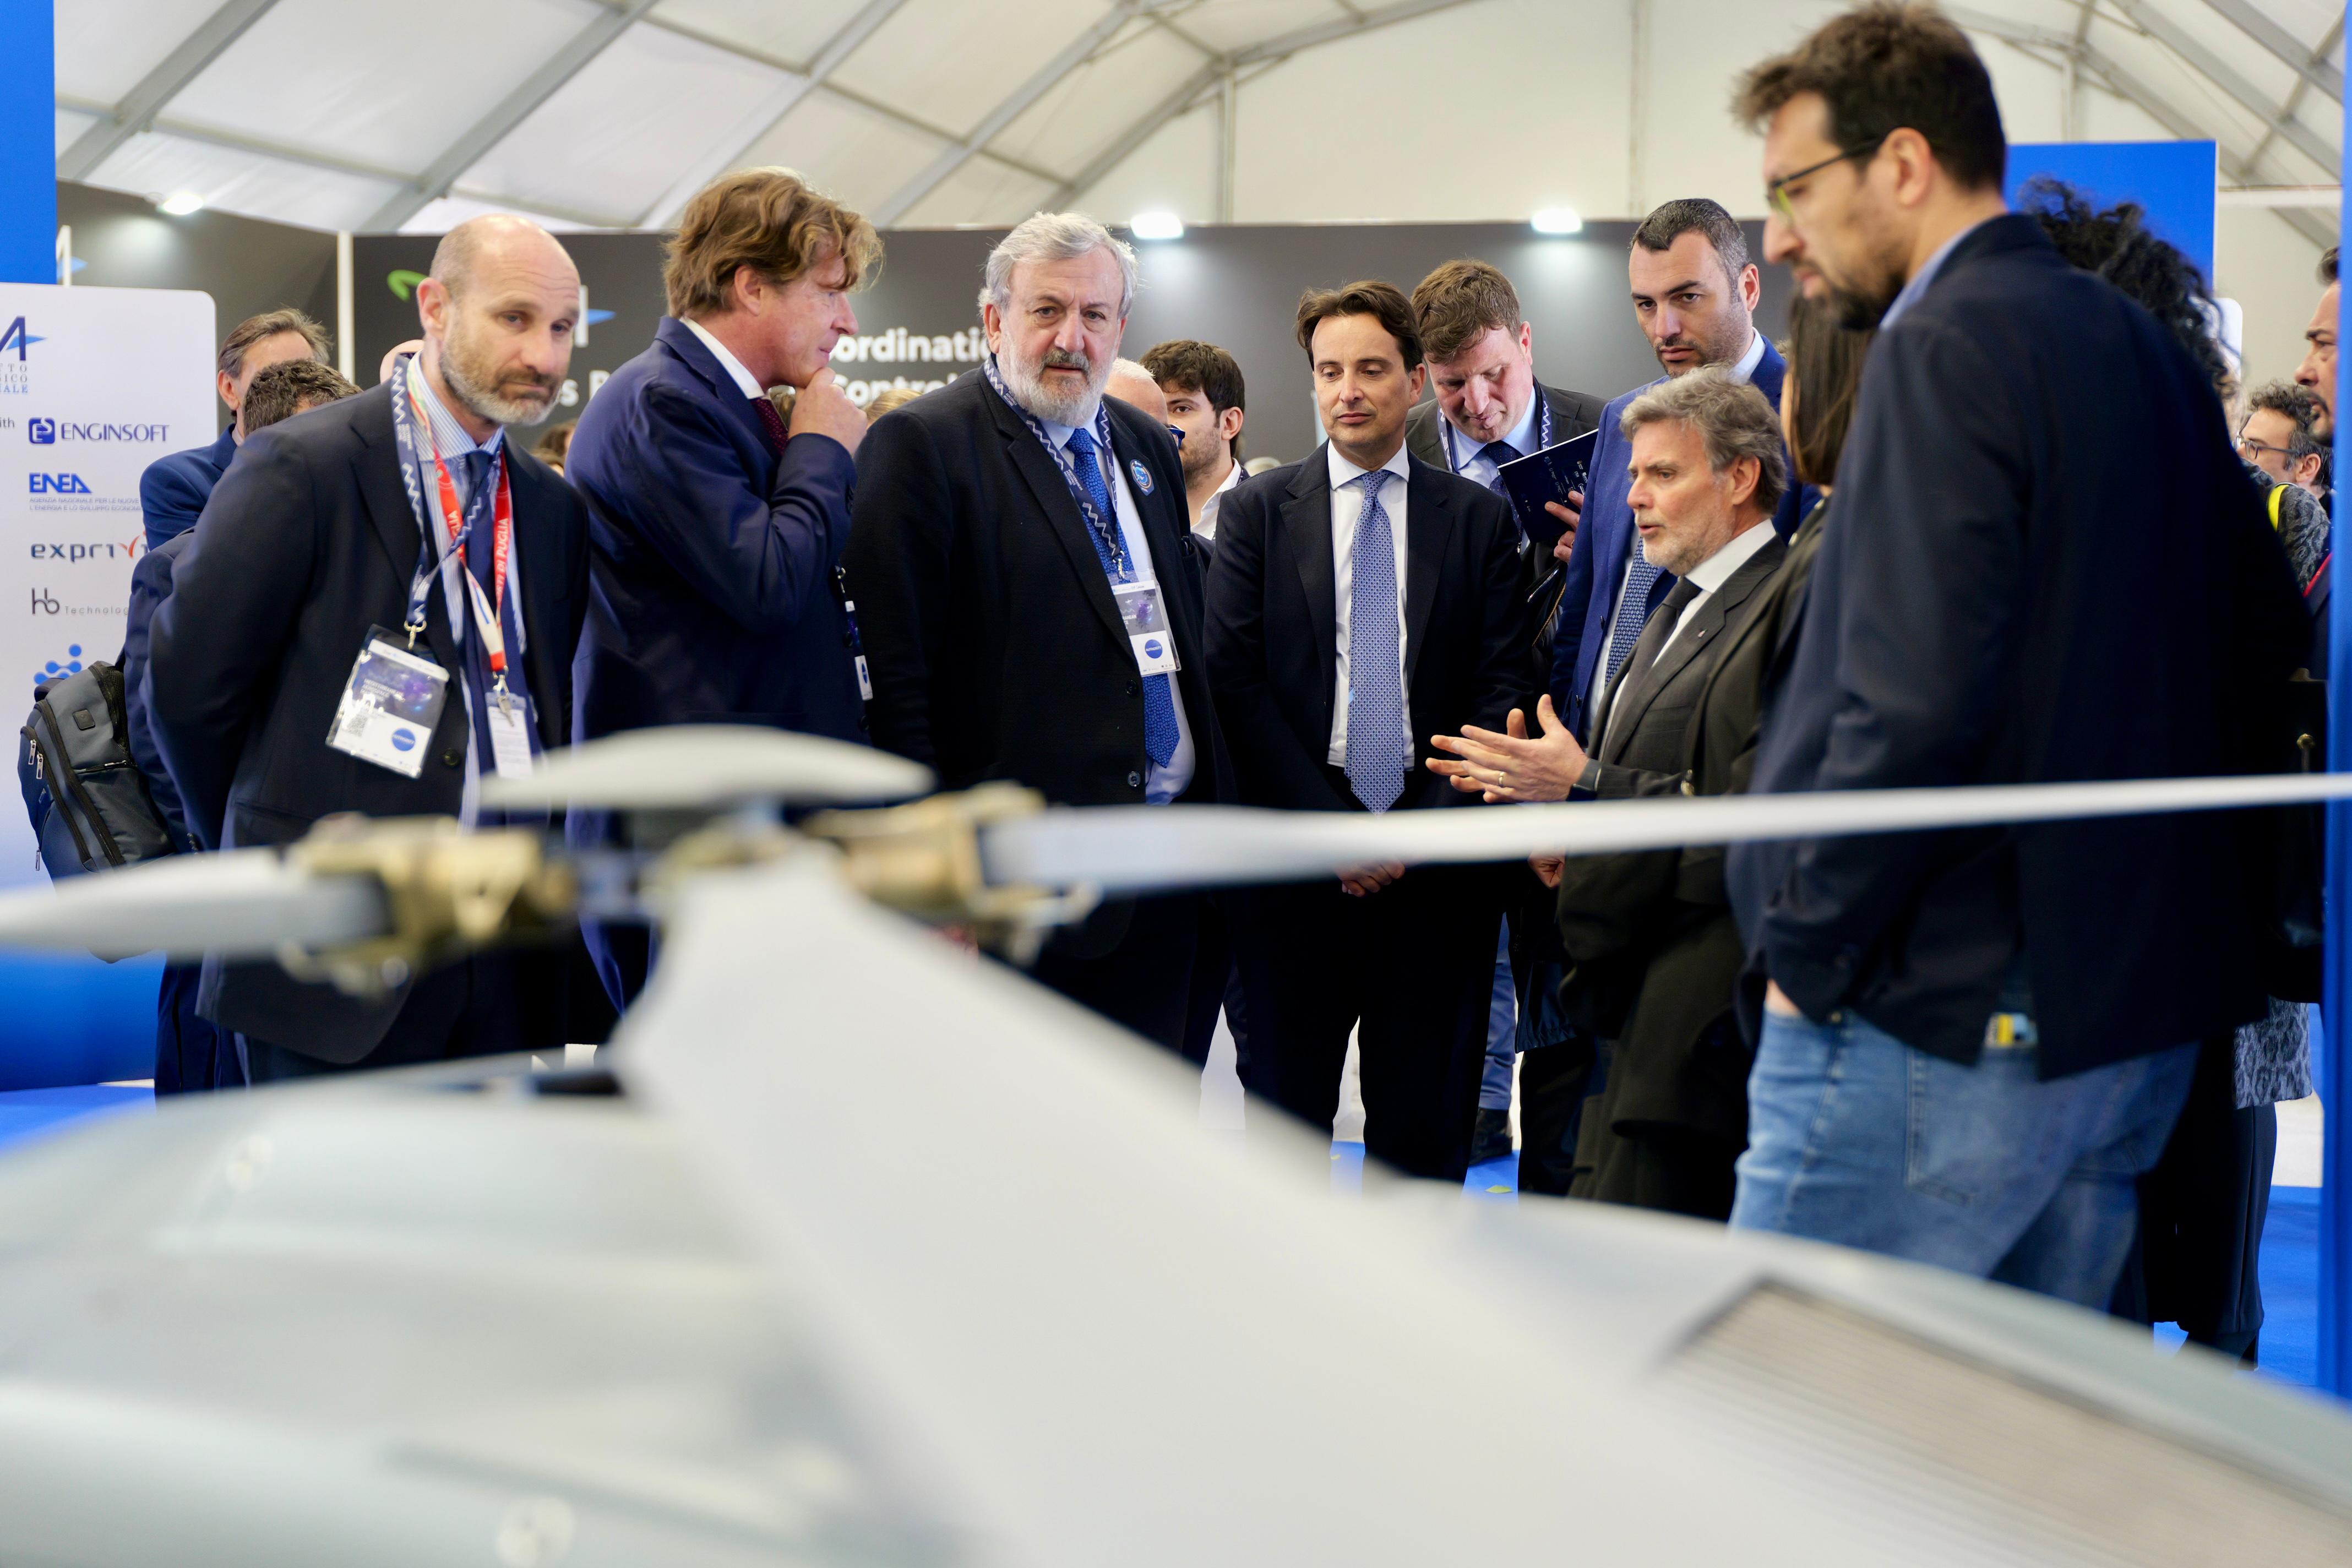 Galleria Inaugurata la seconda edizione del Mediterranean Aerospace Matching (MAM). A Grottaglie il cuore dell’Europa aerospaziale. Presentata la strategia europea sui droni - Diapositiva 10 di 13